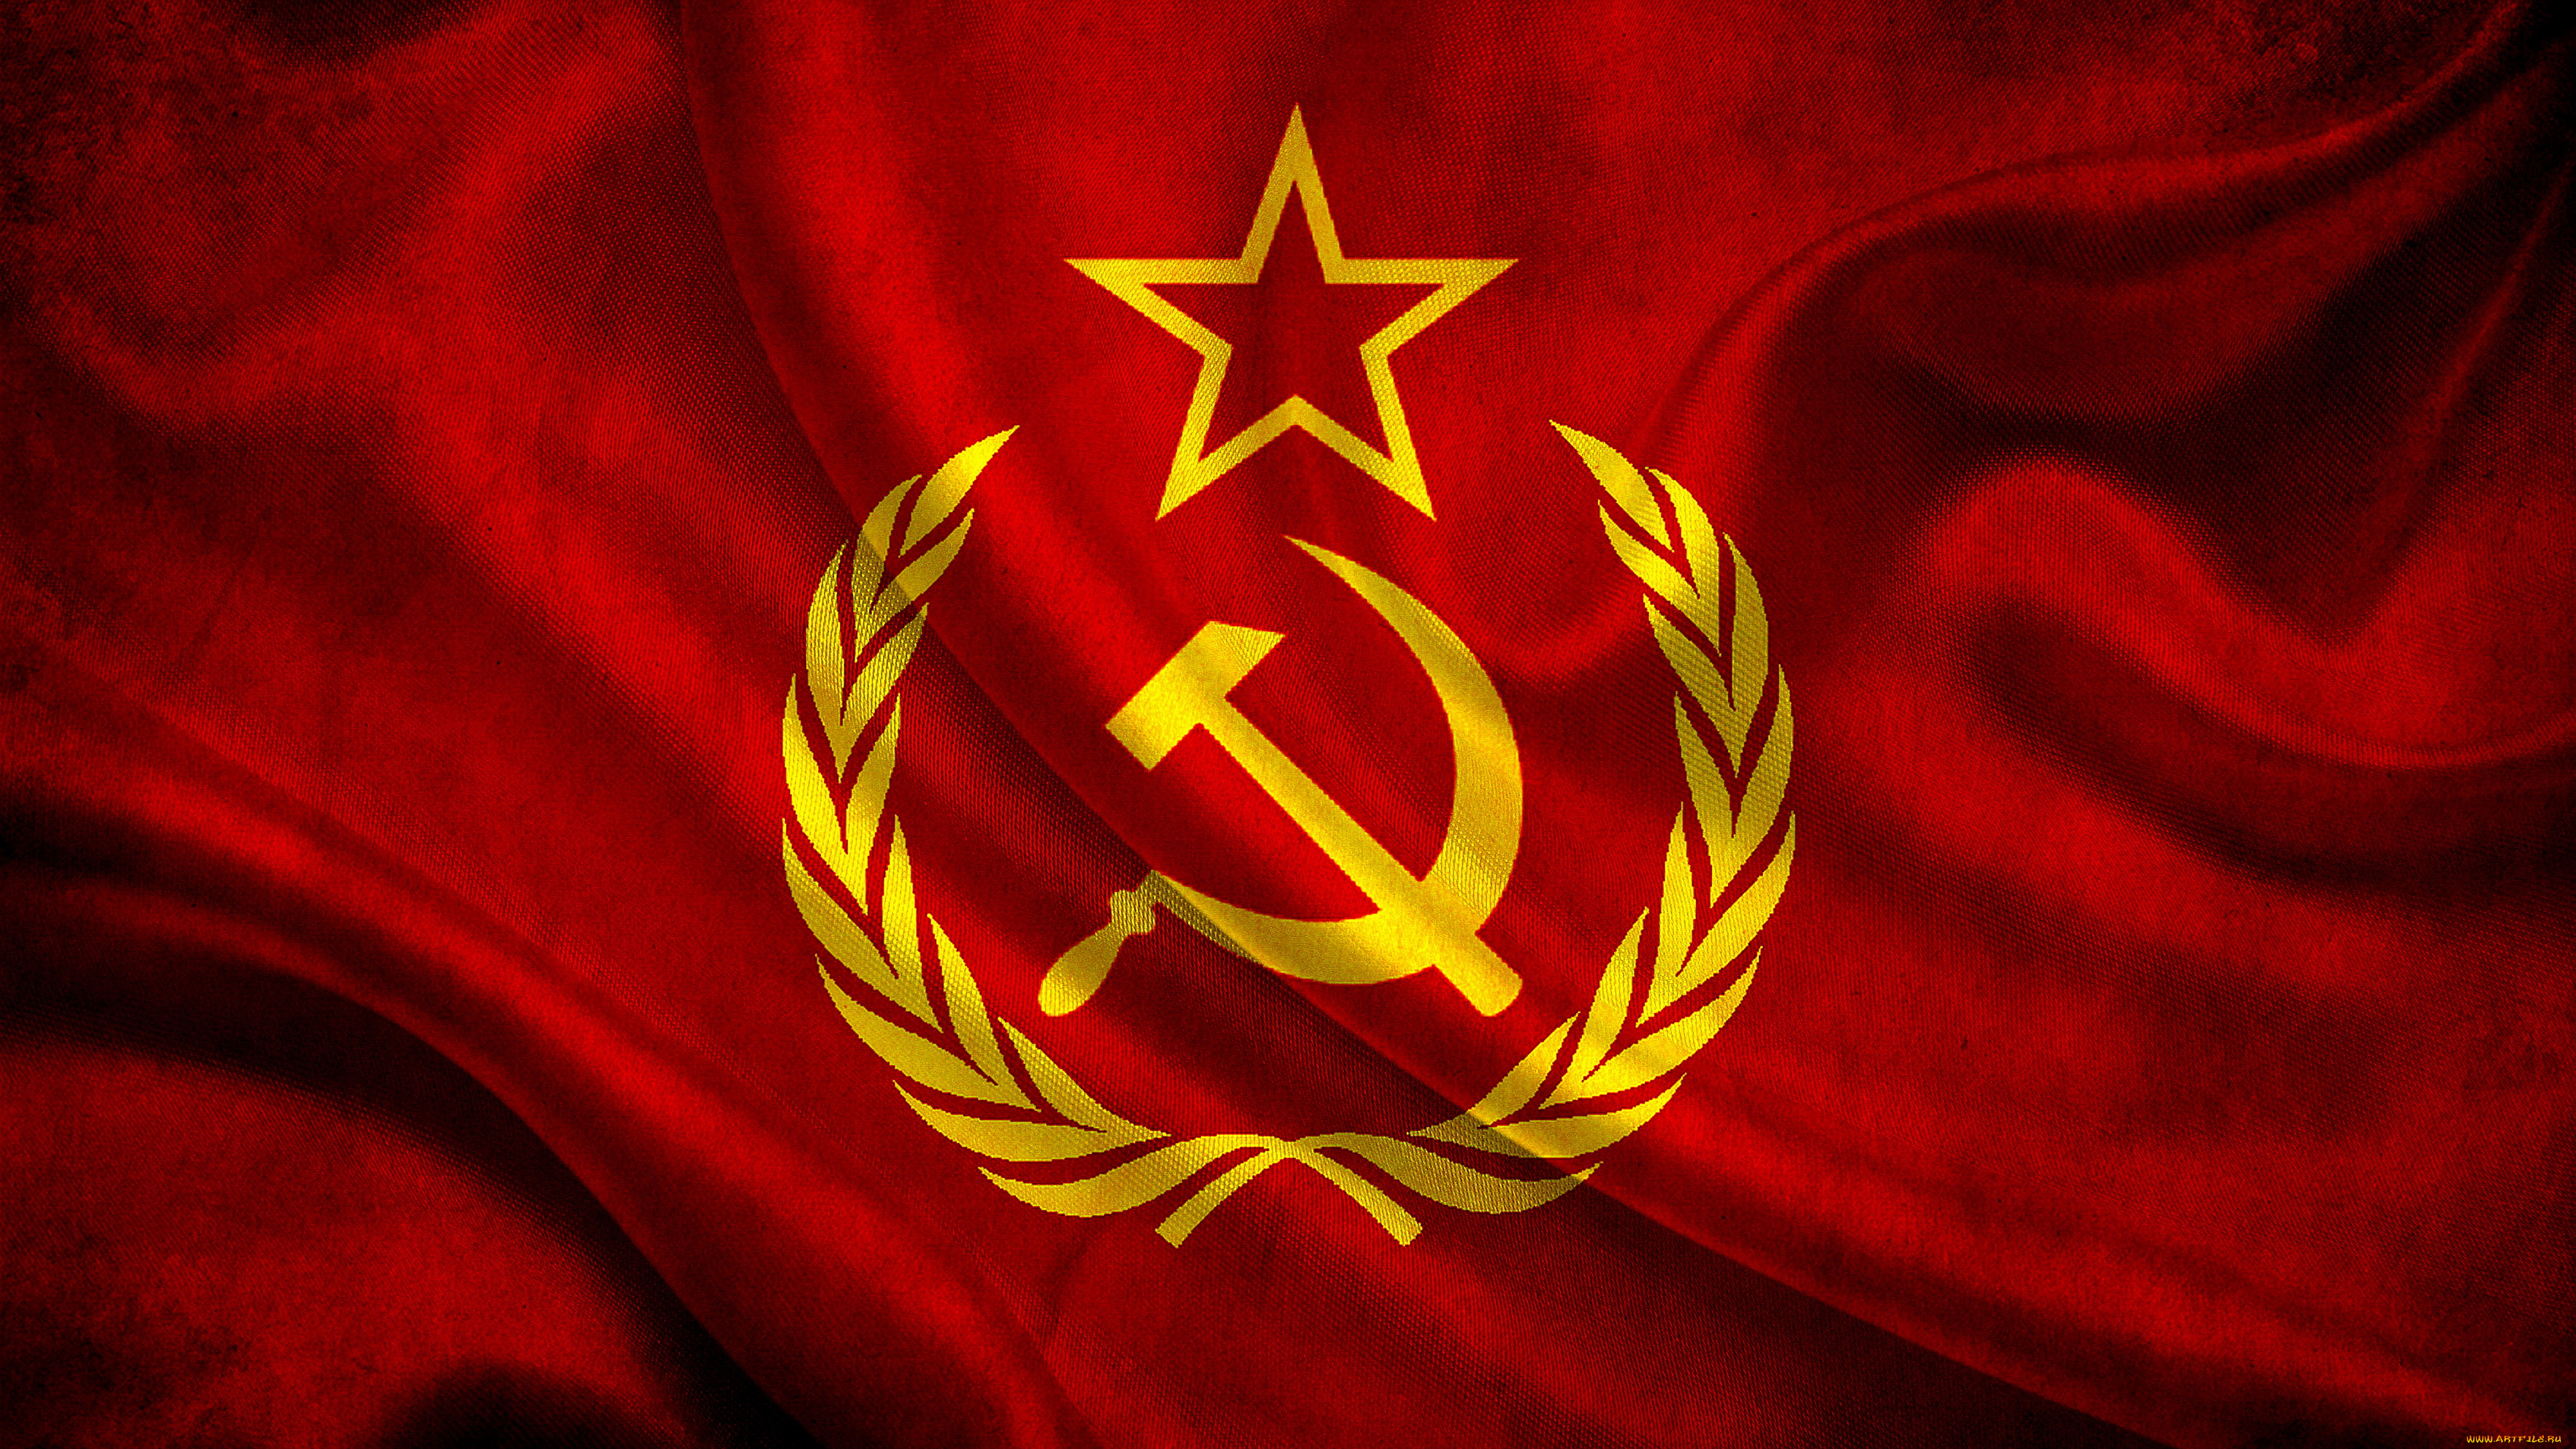 Обои СССР Разное Символы СССР, России, обои для рабочего стола, фотографии  ссср, разное, символы, россии, флаг Обои для рабочего стола, скачать обои  картинки заставки на рабочий стол.